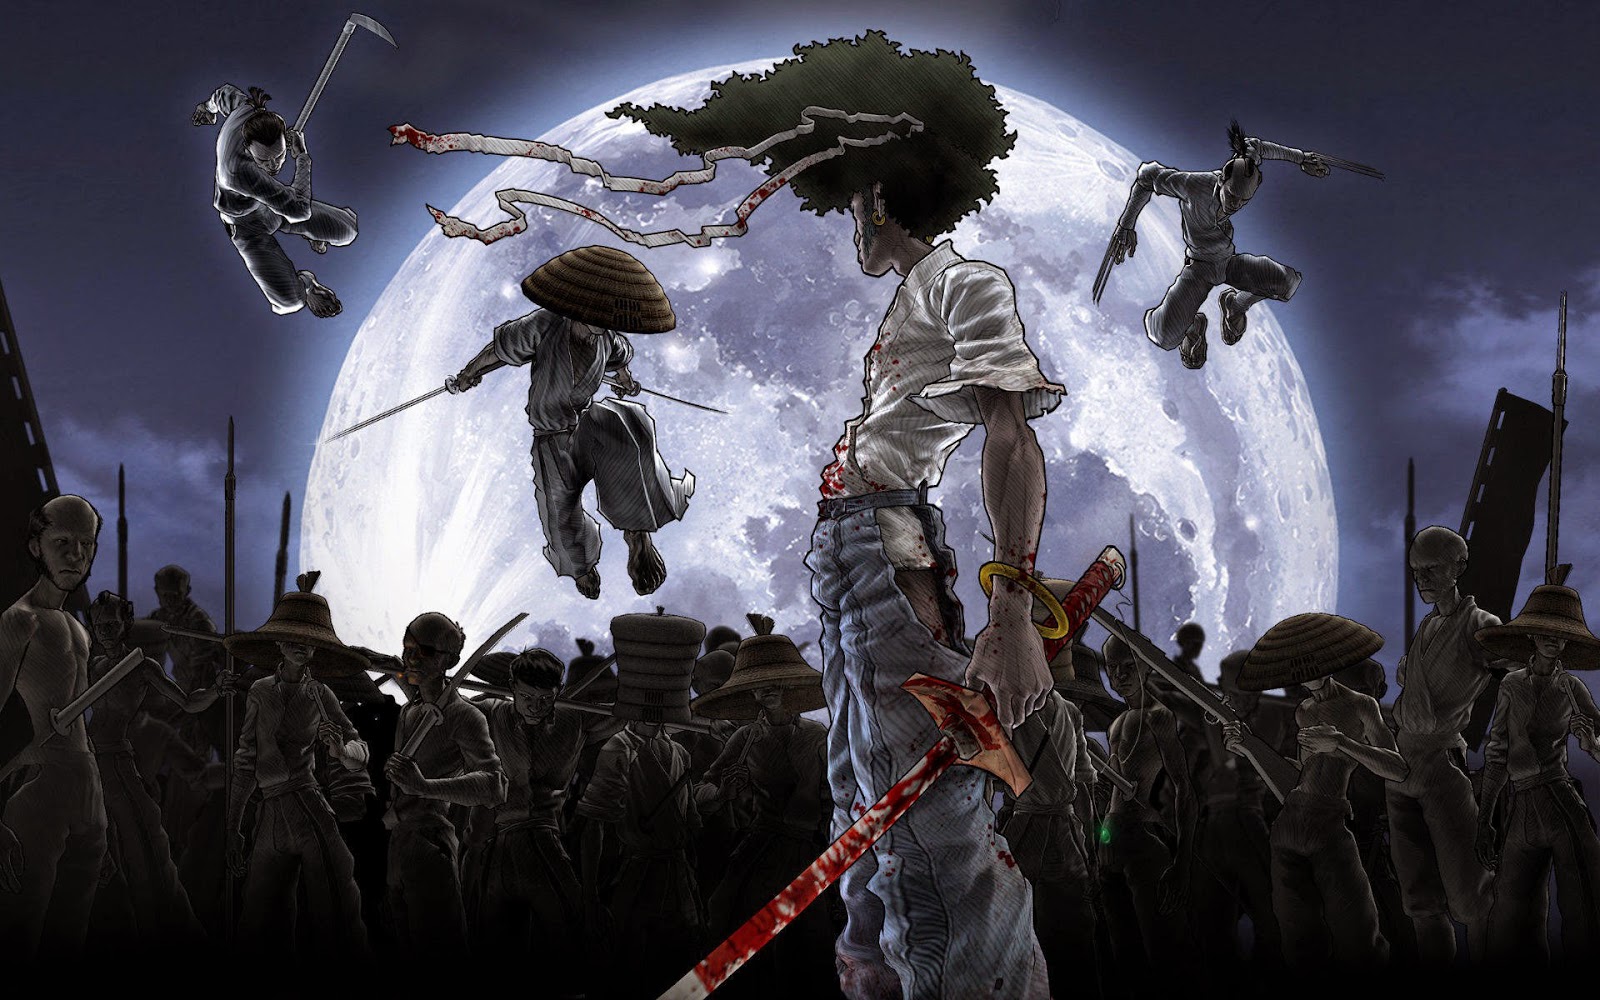 Afro Samurai (Dublado / Legendado)